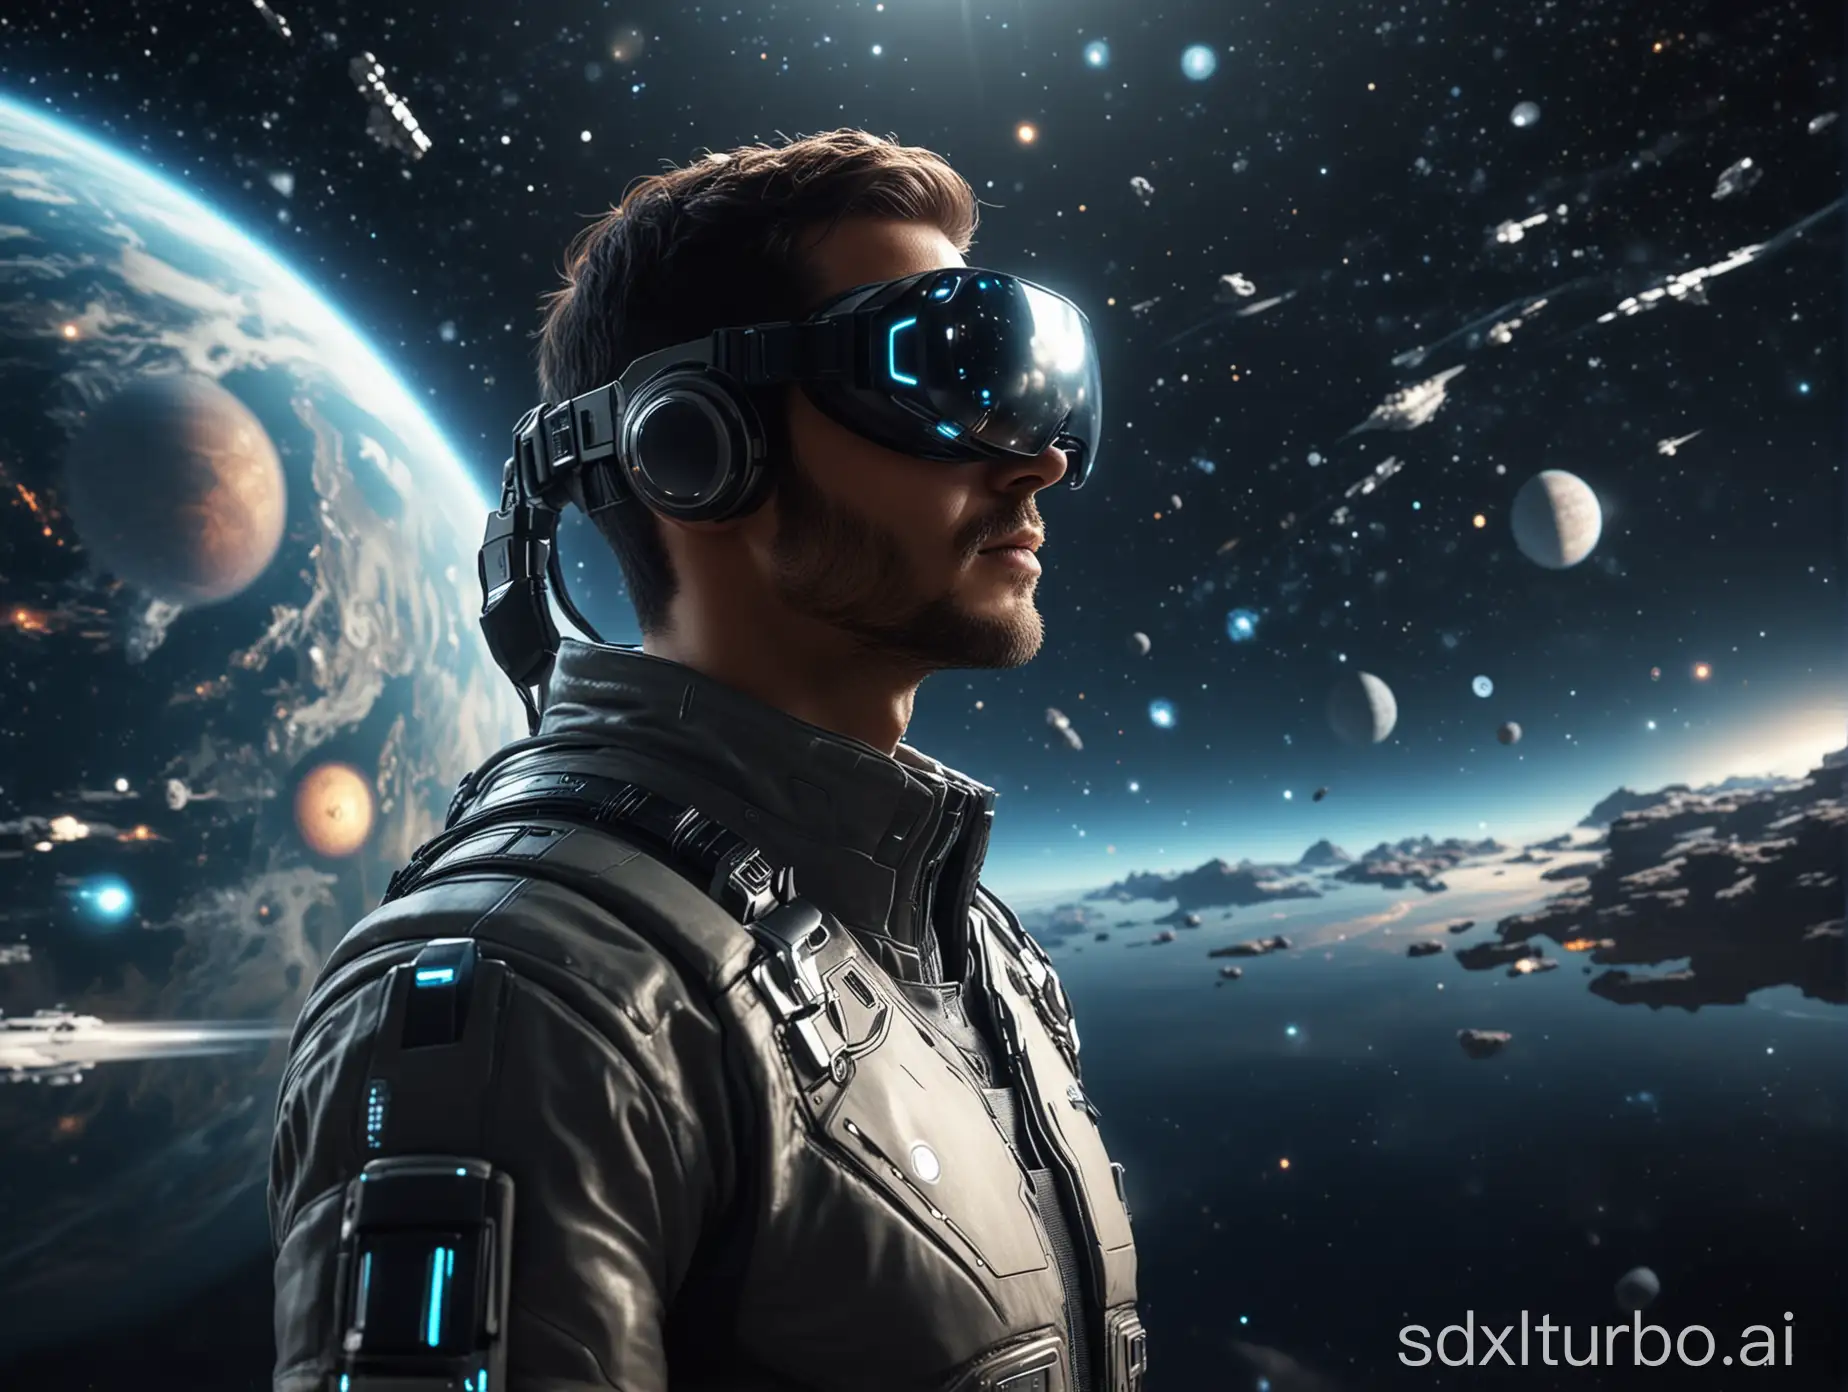  一个男人使用虚拟成像技术，探索宇宙 ，充满科技感 未来感 科幻感 8k画质 现实风格